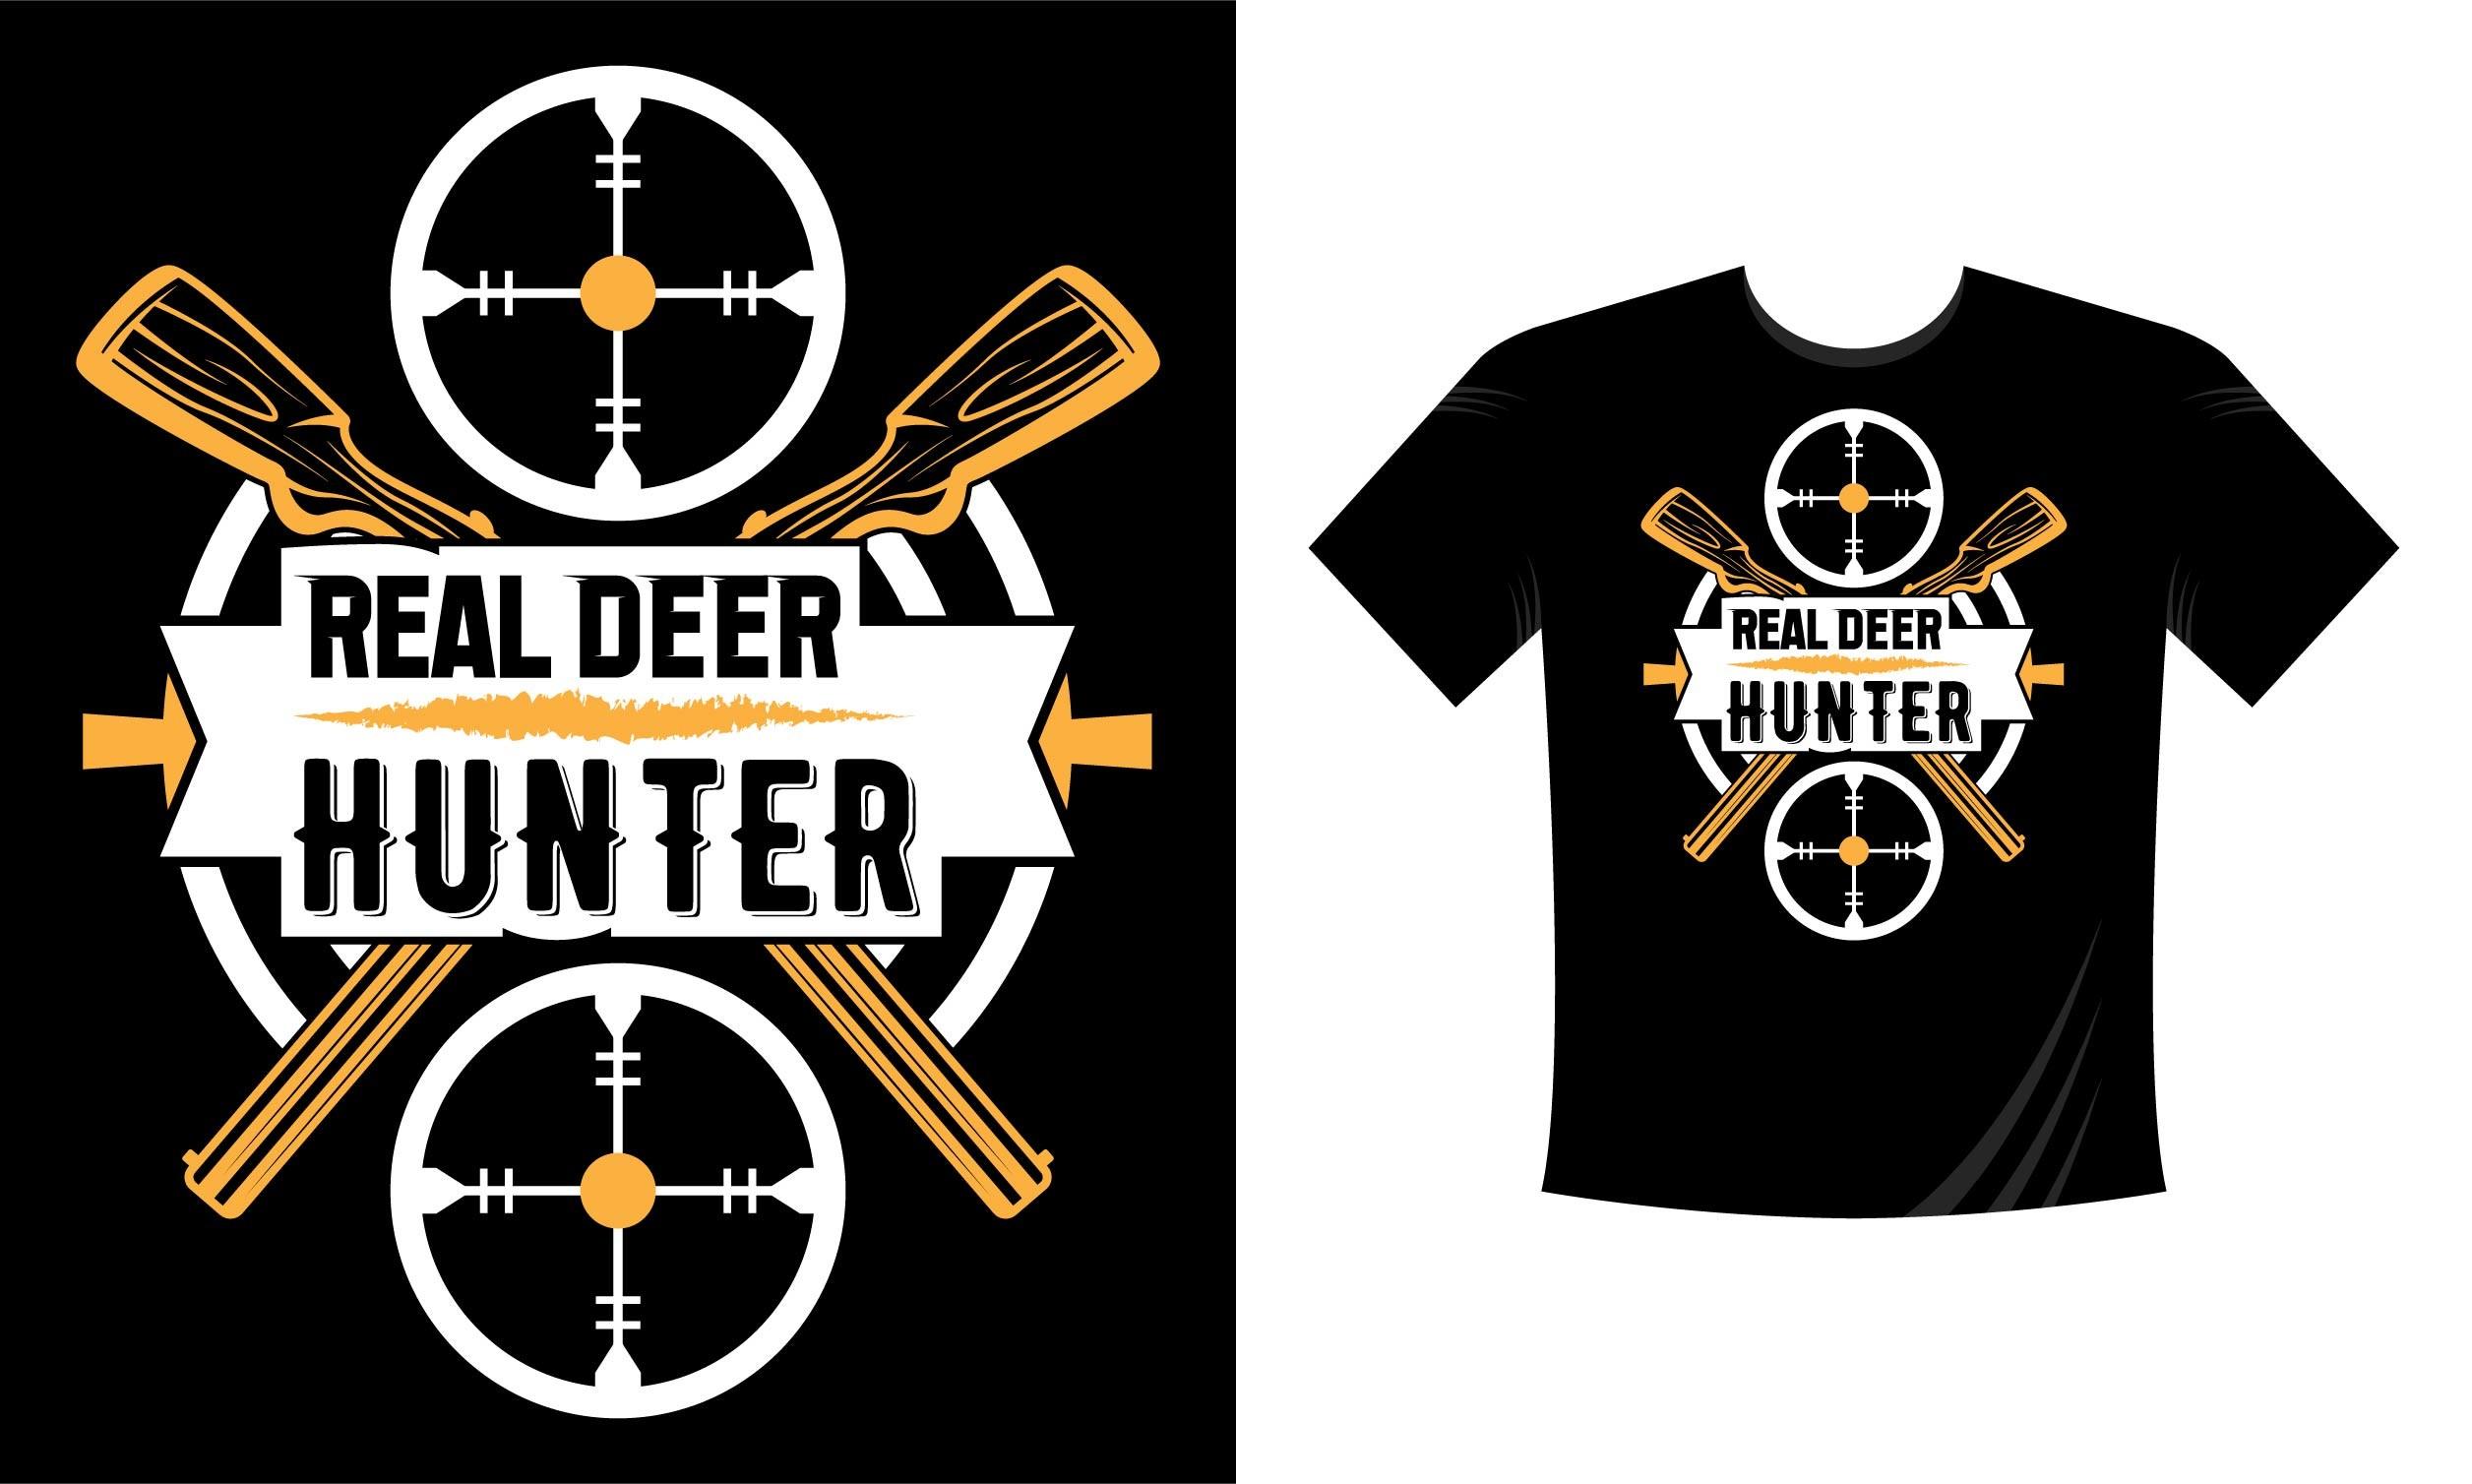 Real Deer Hunter. Hunting T-Shirt Design